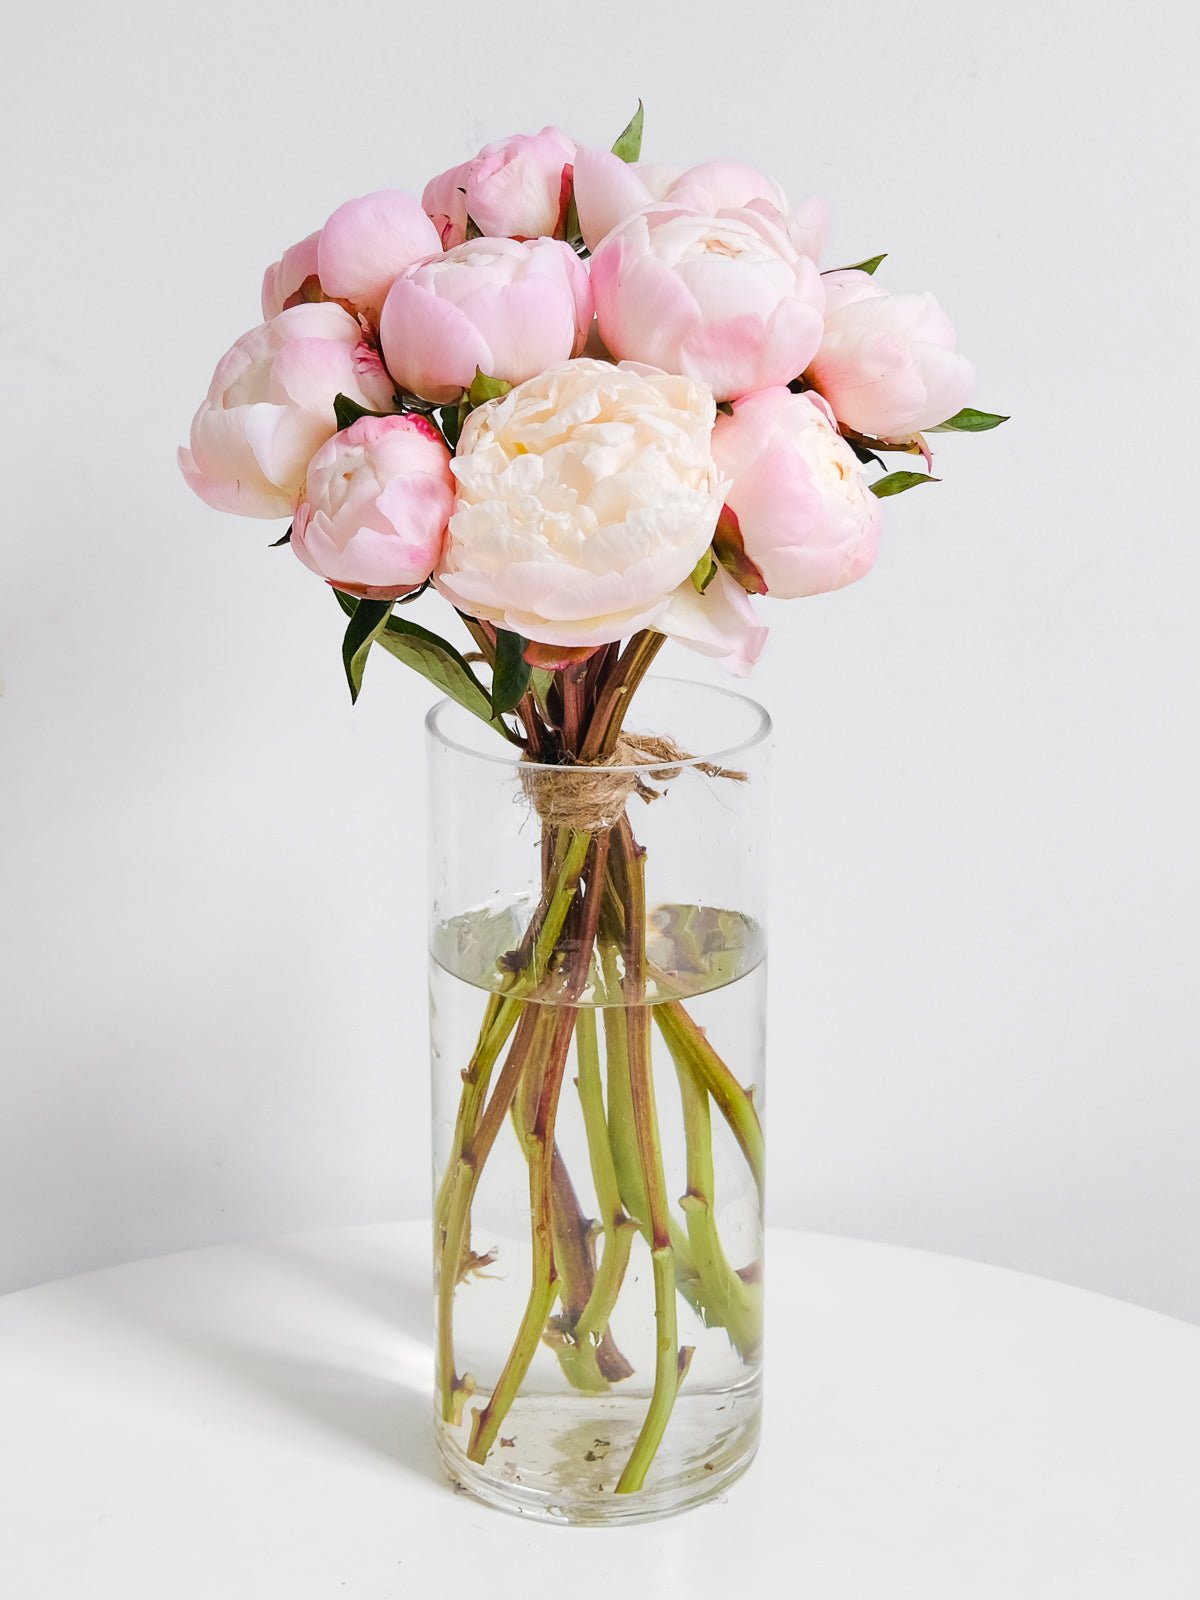 Peonies Bouquet - Amazing Graze Flowers